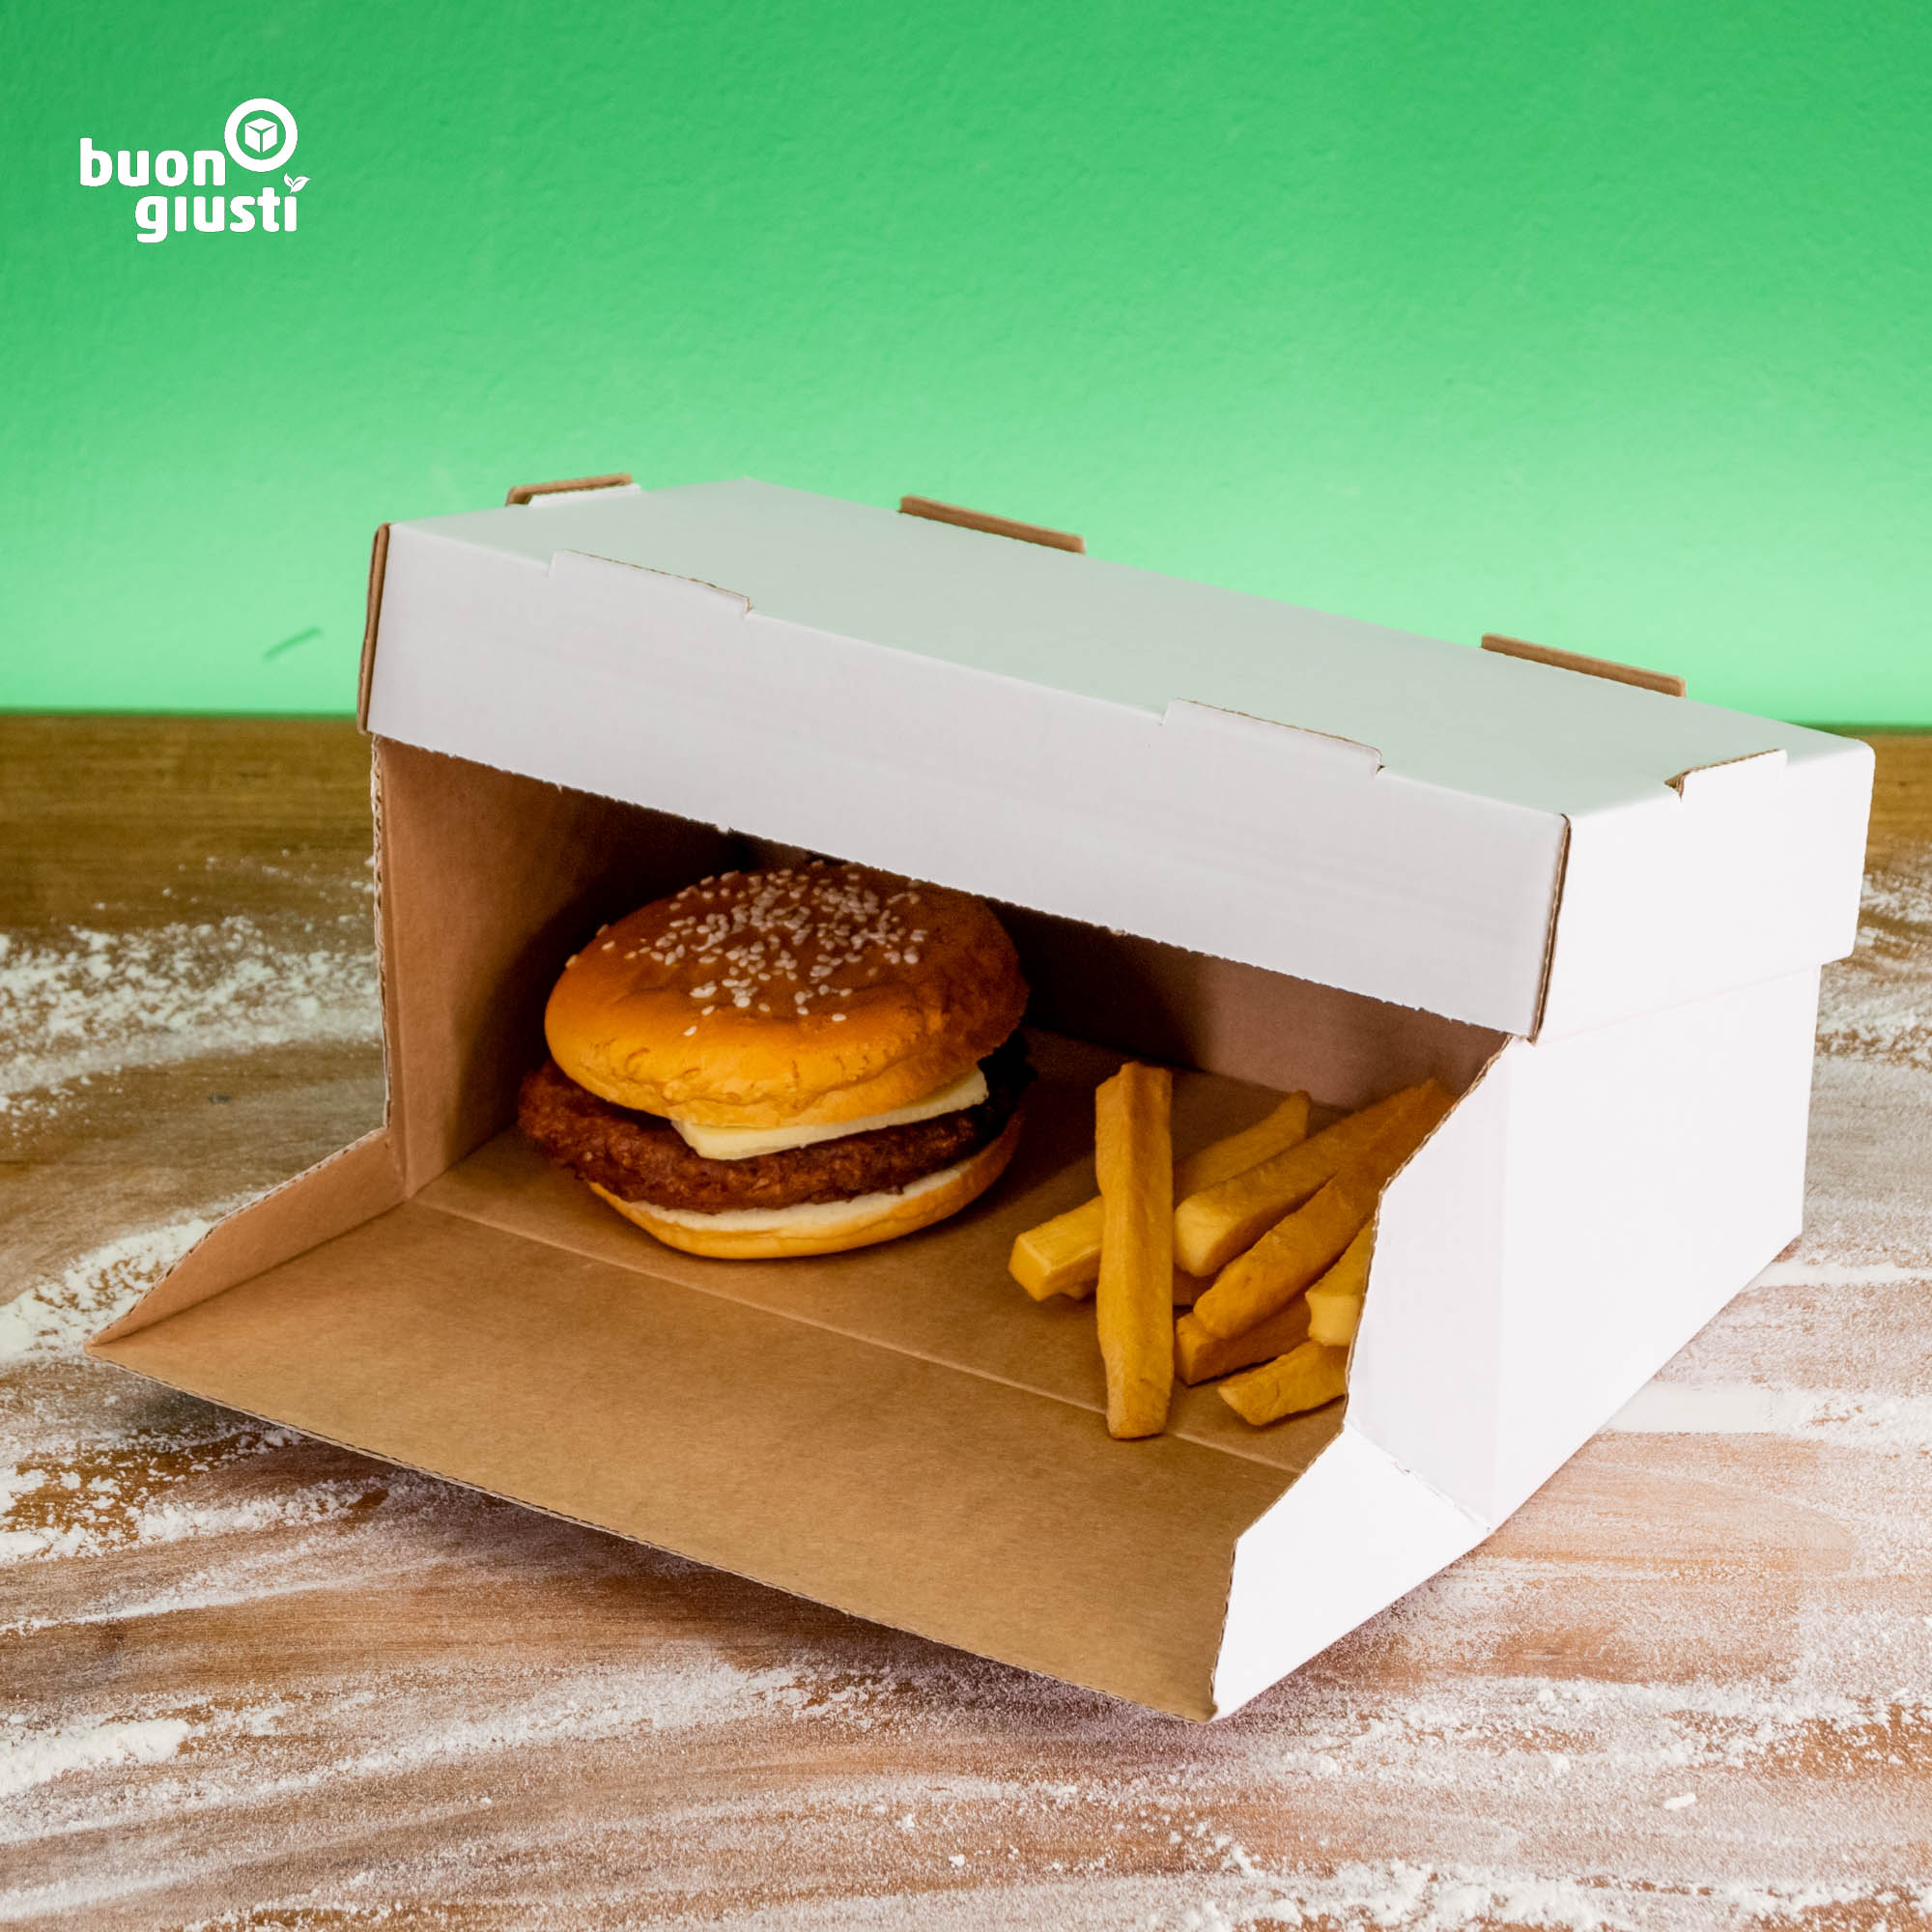 200x Bio Burger-Box Wellpappe 24x12x10 cm für 2 Burger weiß/braun